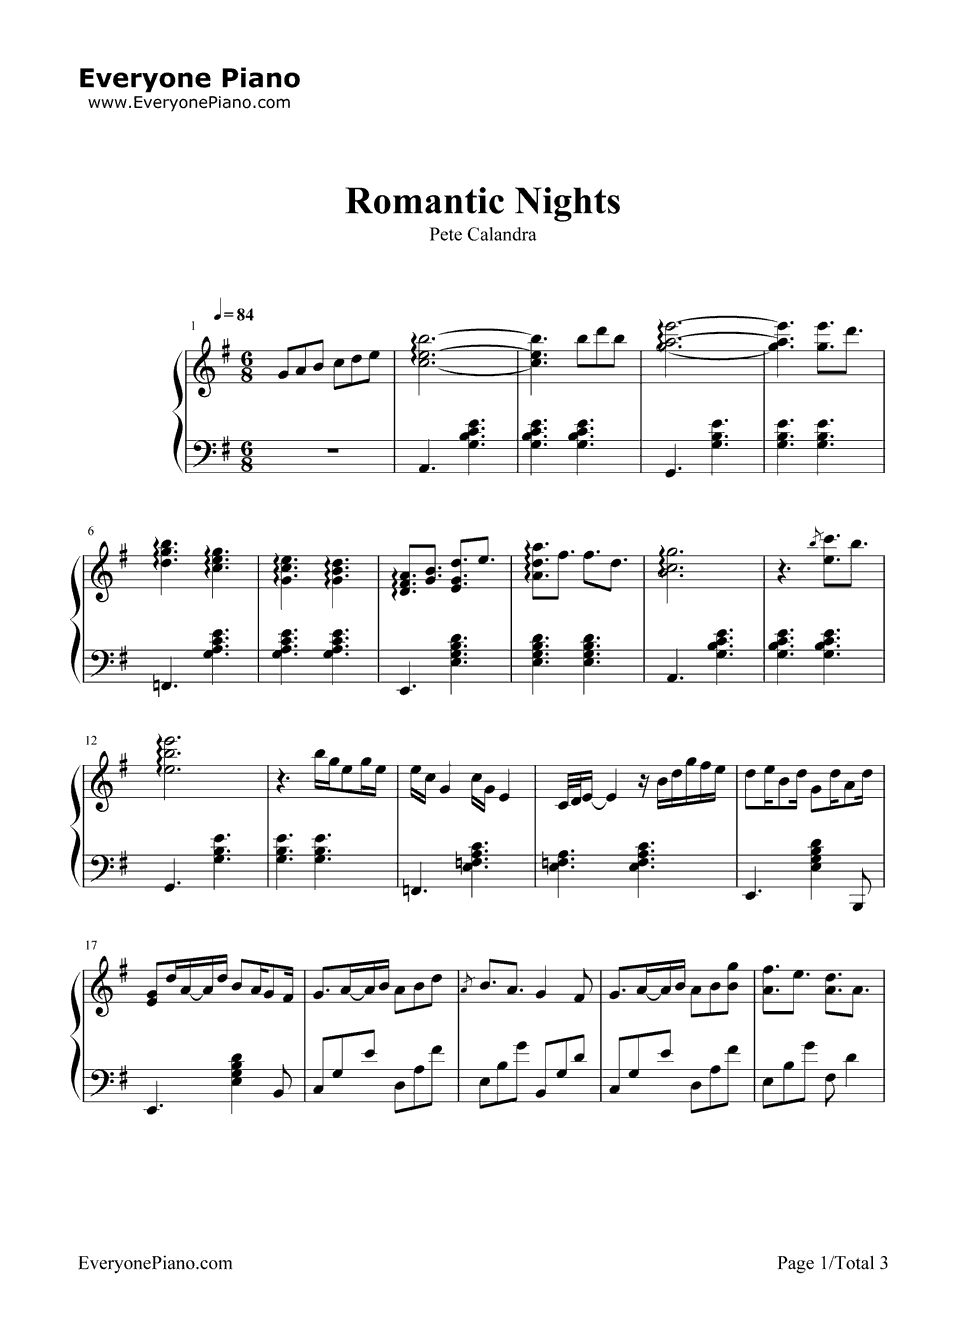 Romantic_Nights钢琴谱_Pete_Calandra